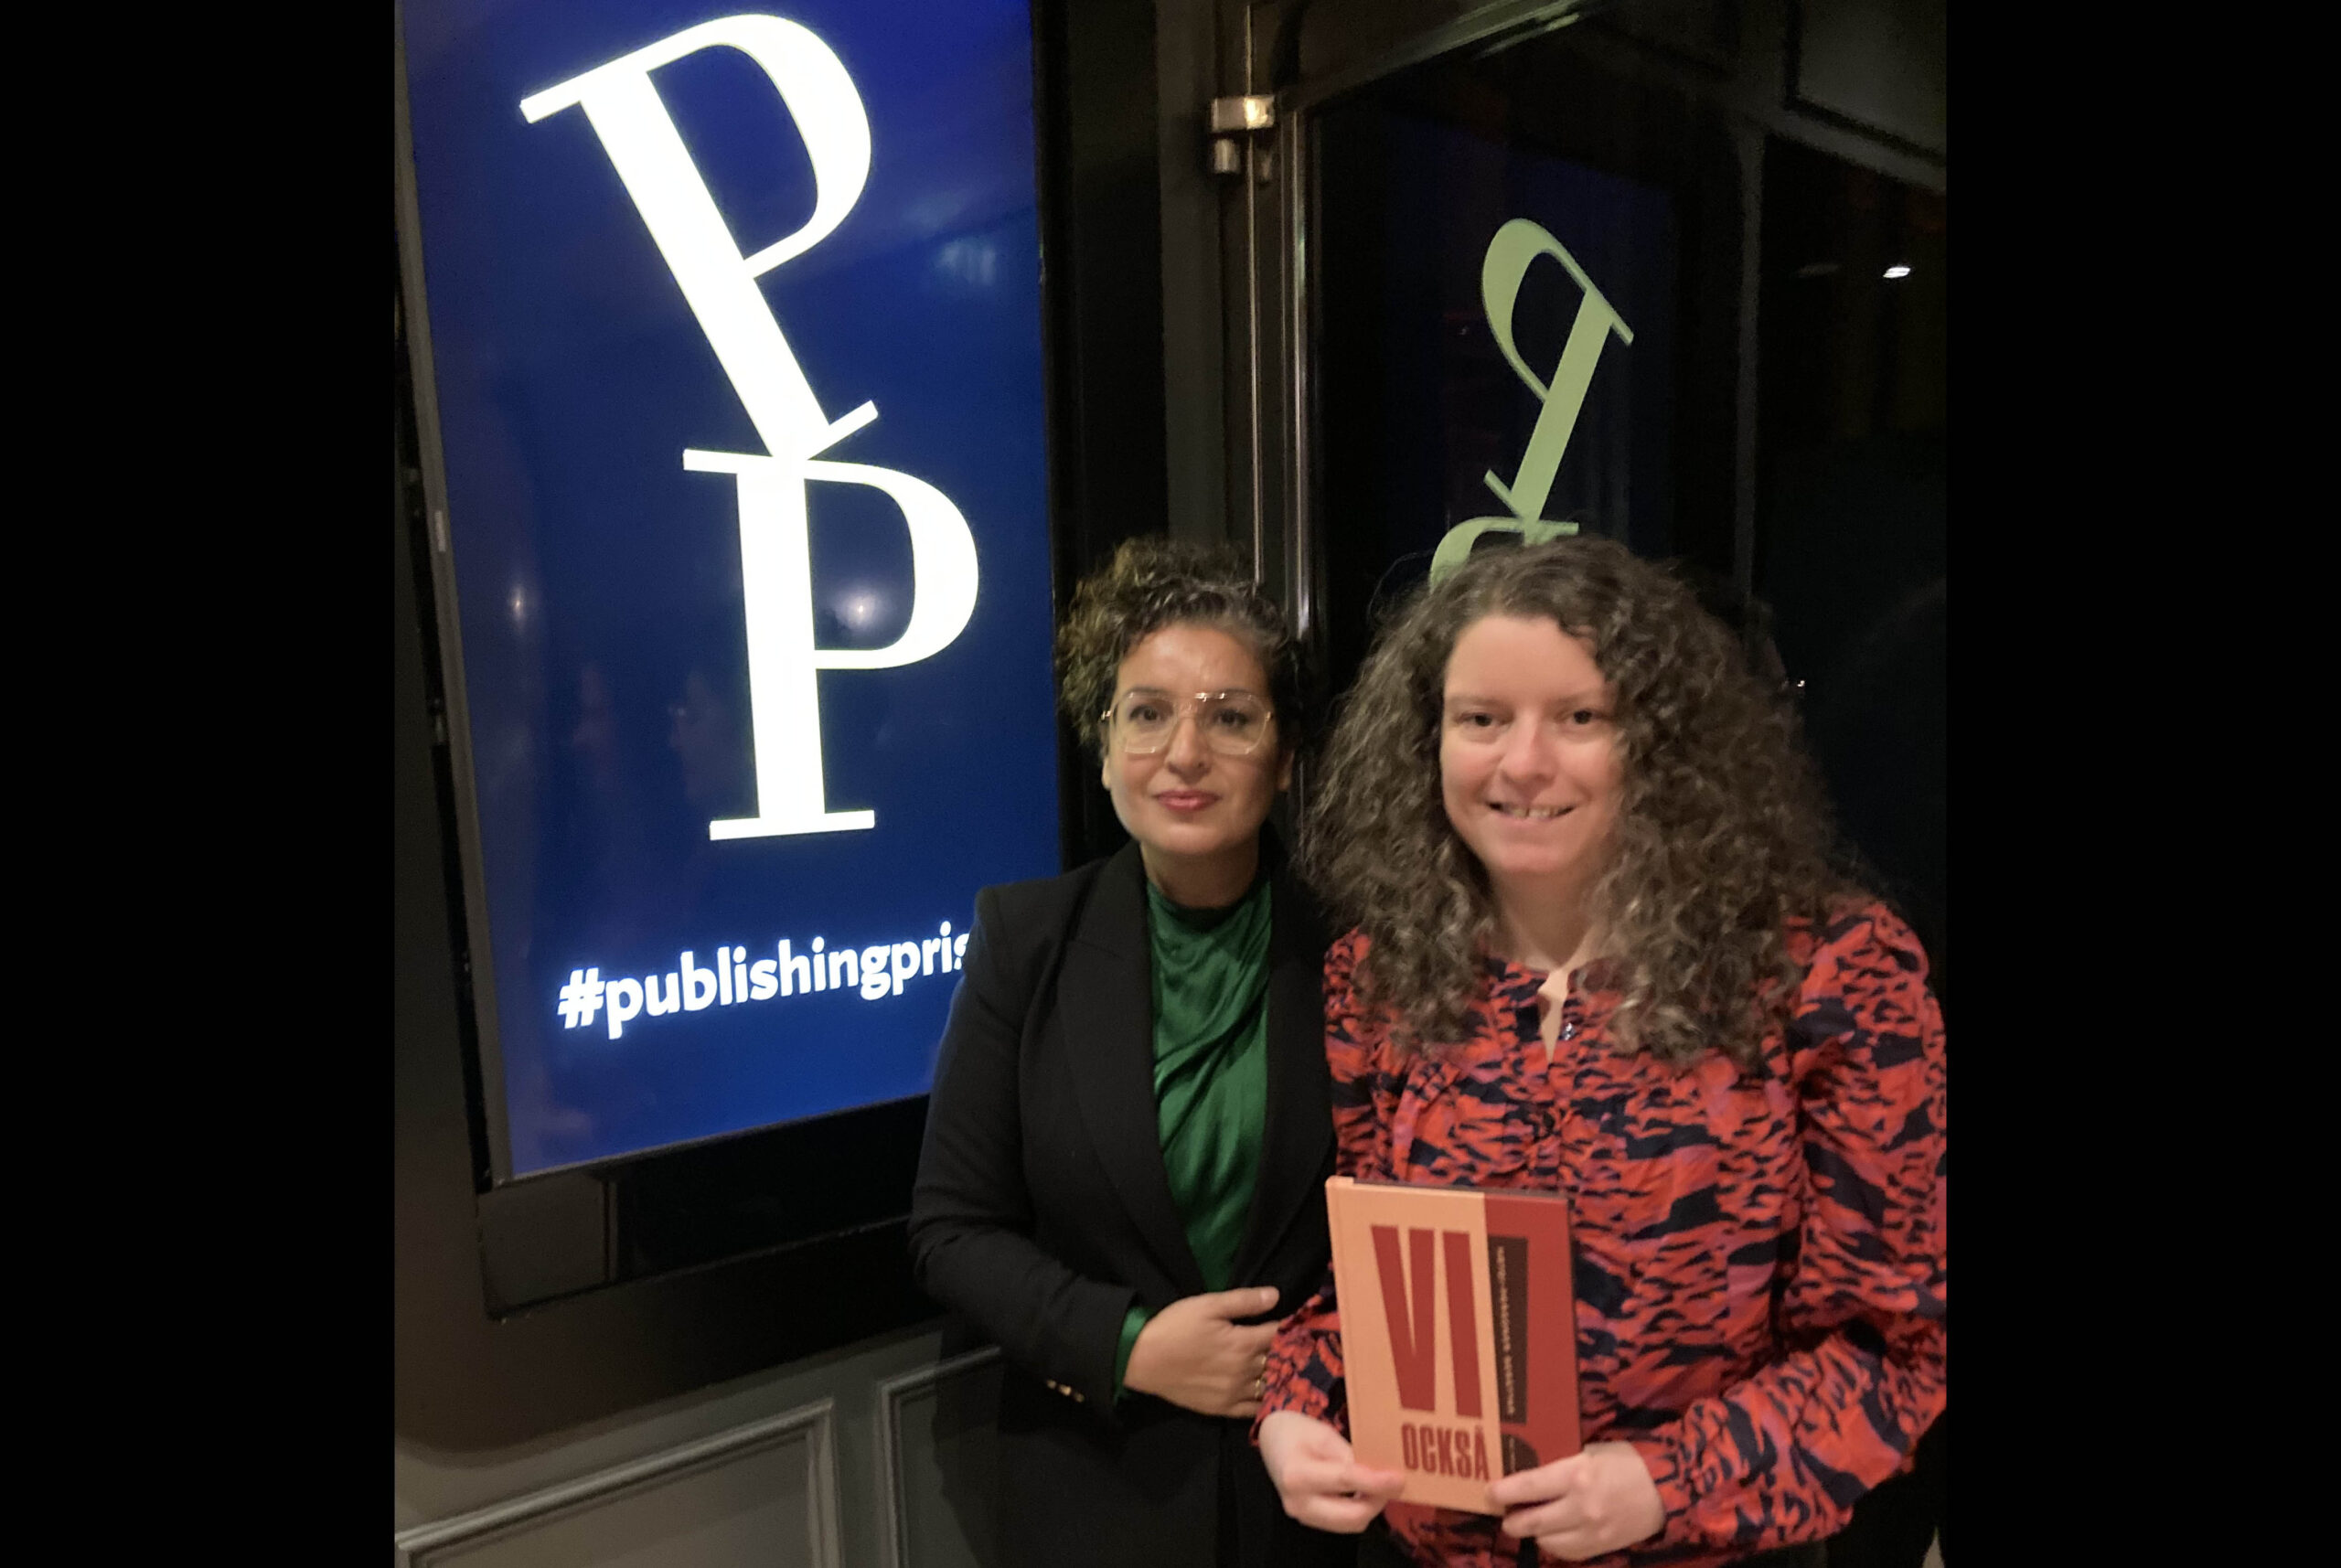 RFSL:s Trifa Shakely och redaktör Maria Niemi håller upp boken "Vi också" framför Publishingpriset-loggan